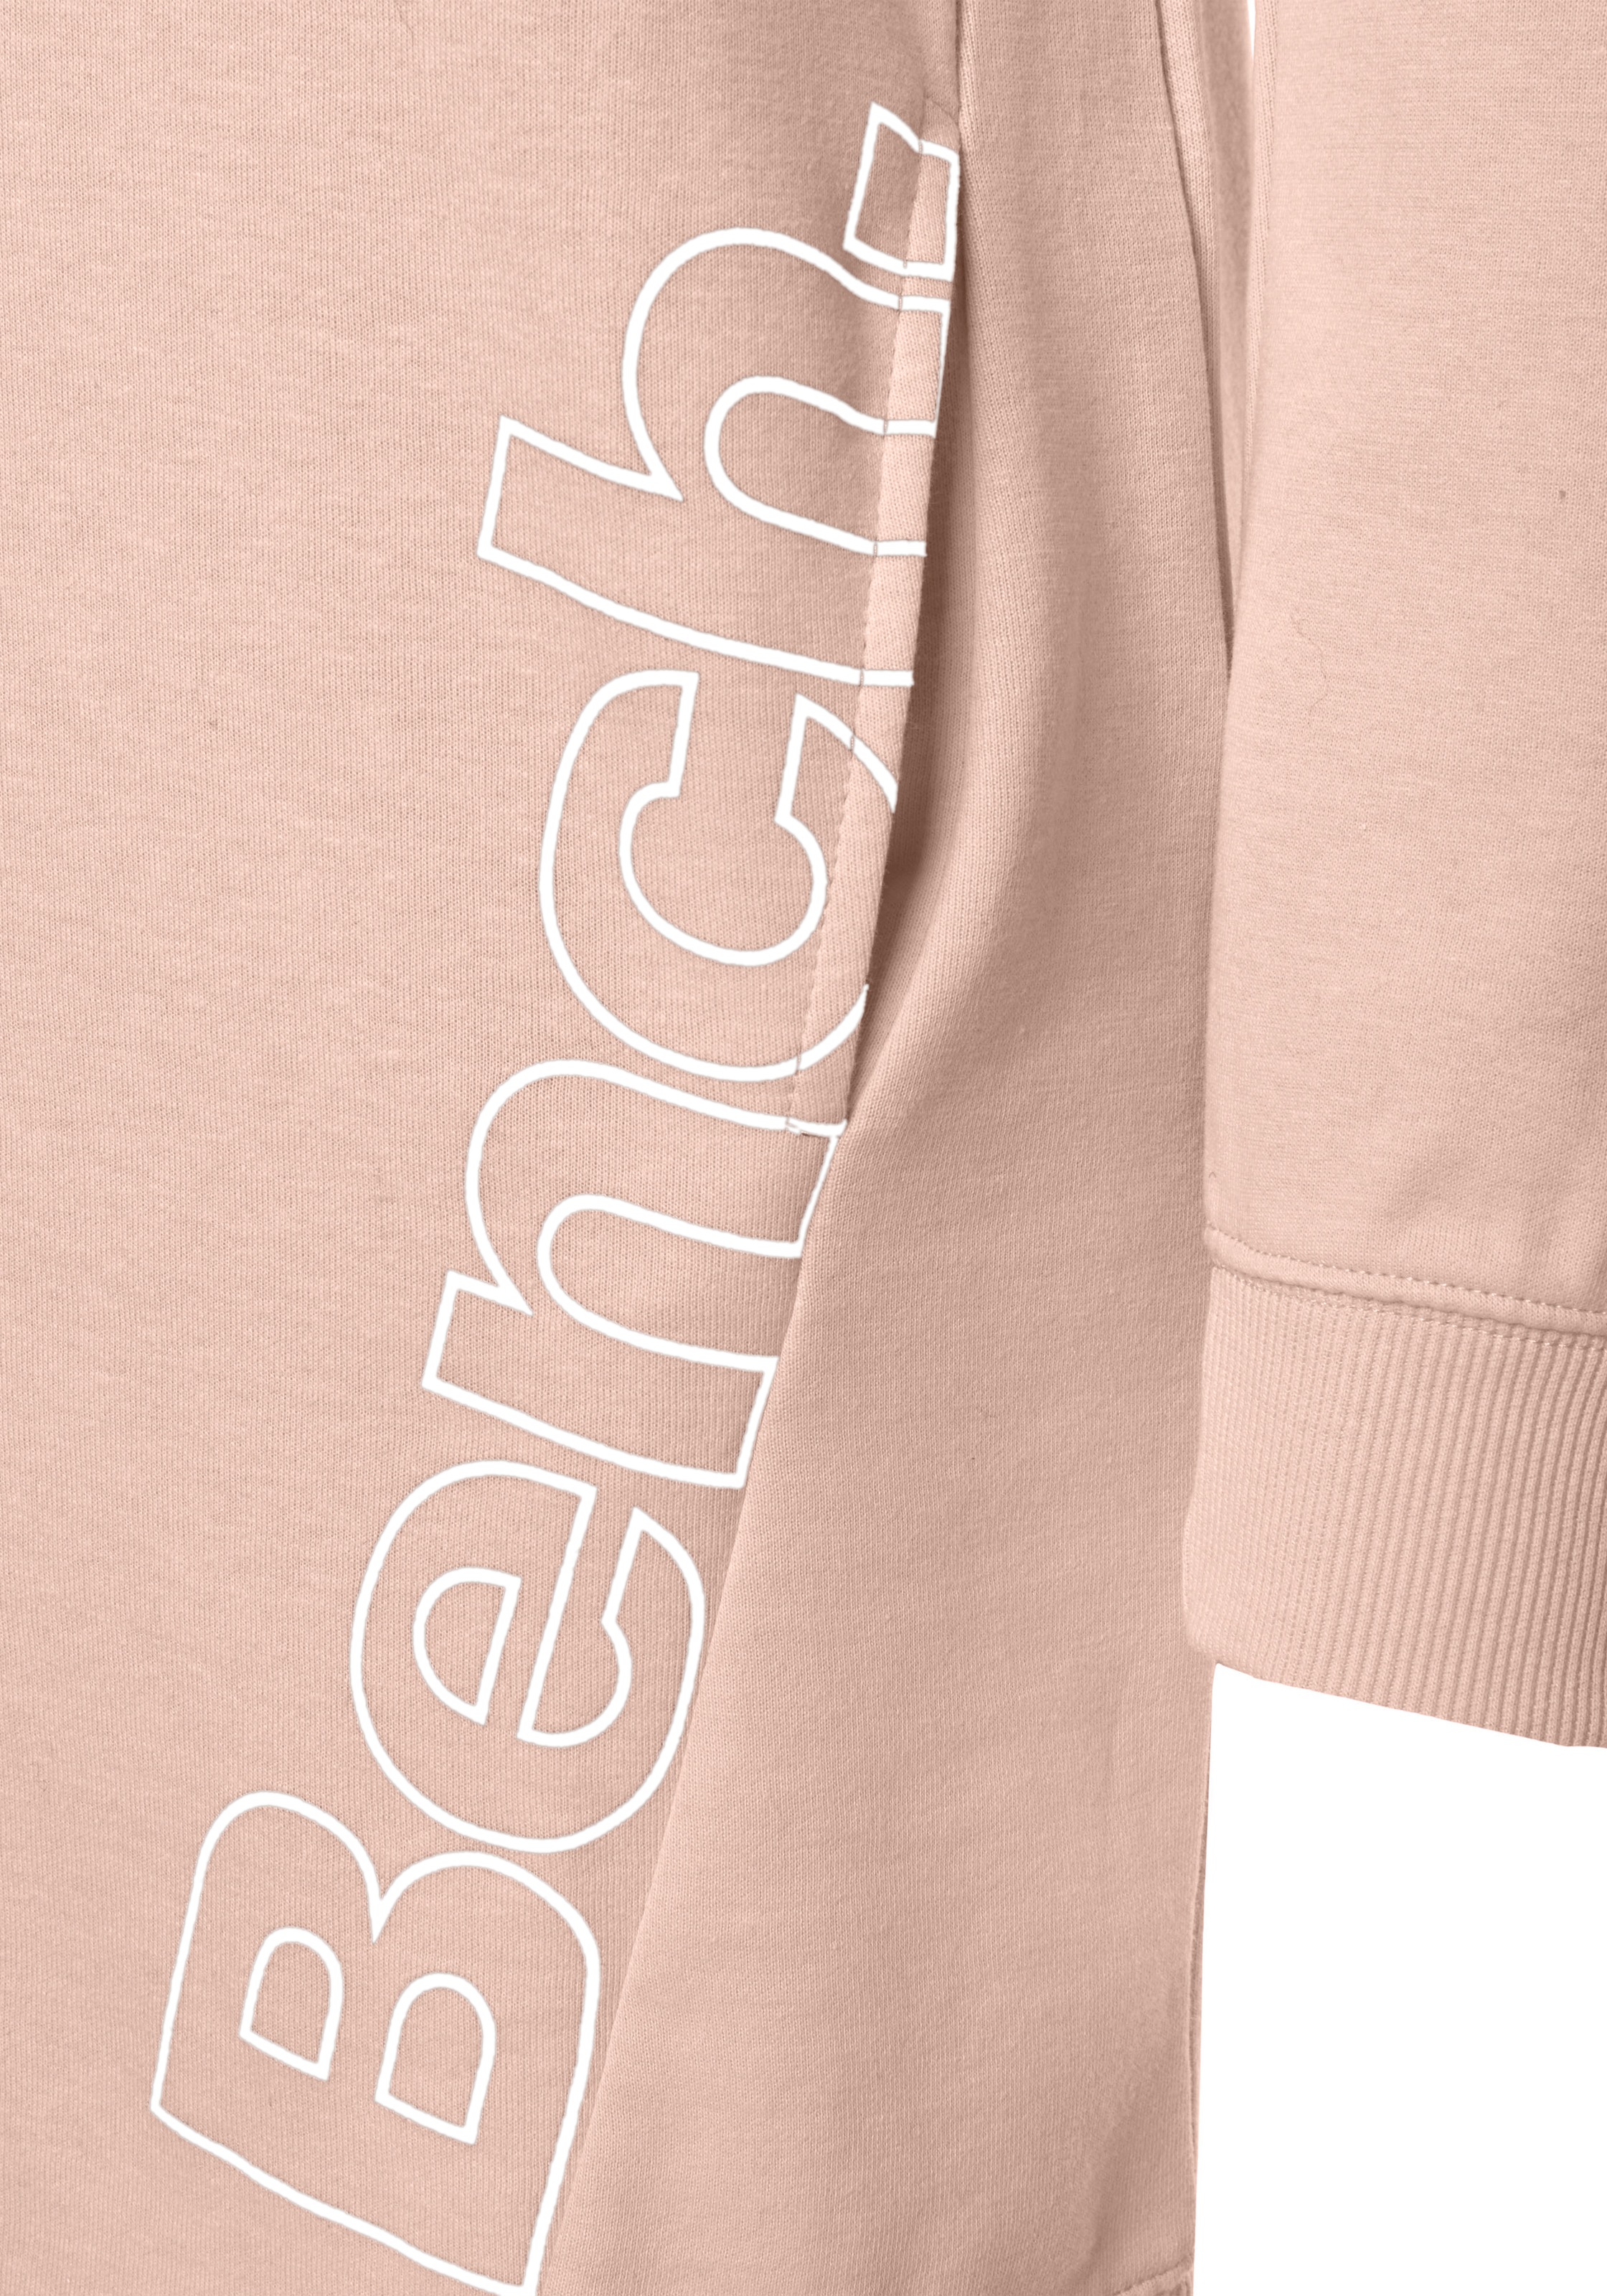 Bench. Sweatkleid, mit seitlichem Logoprint online kaufen